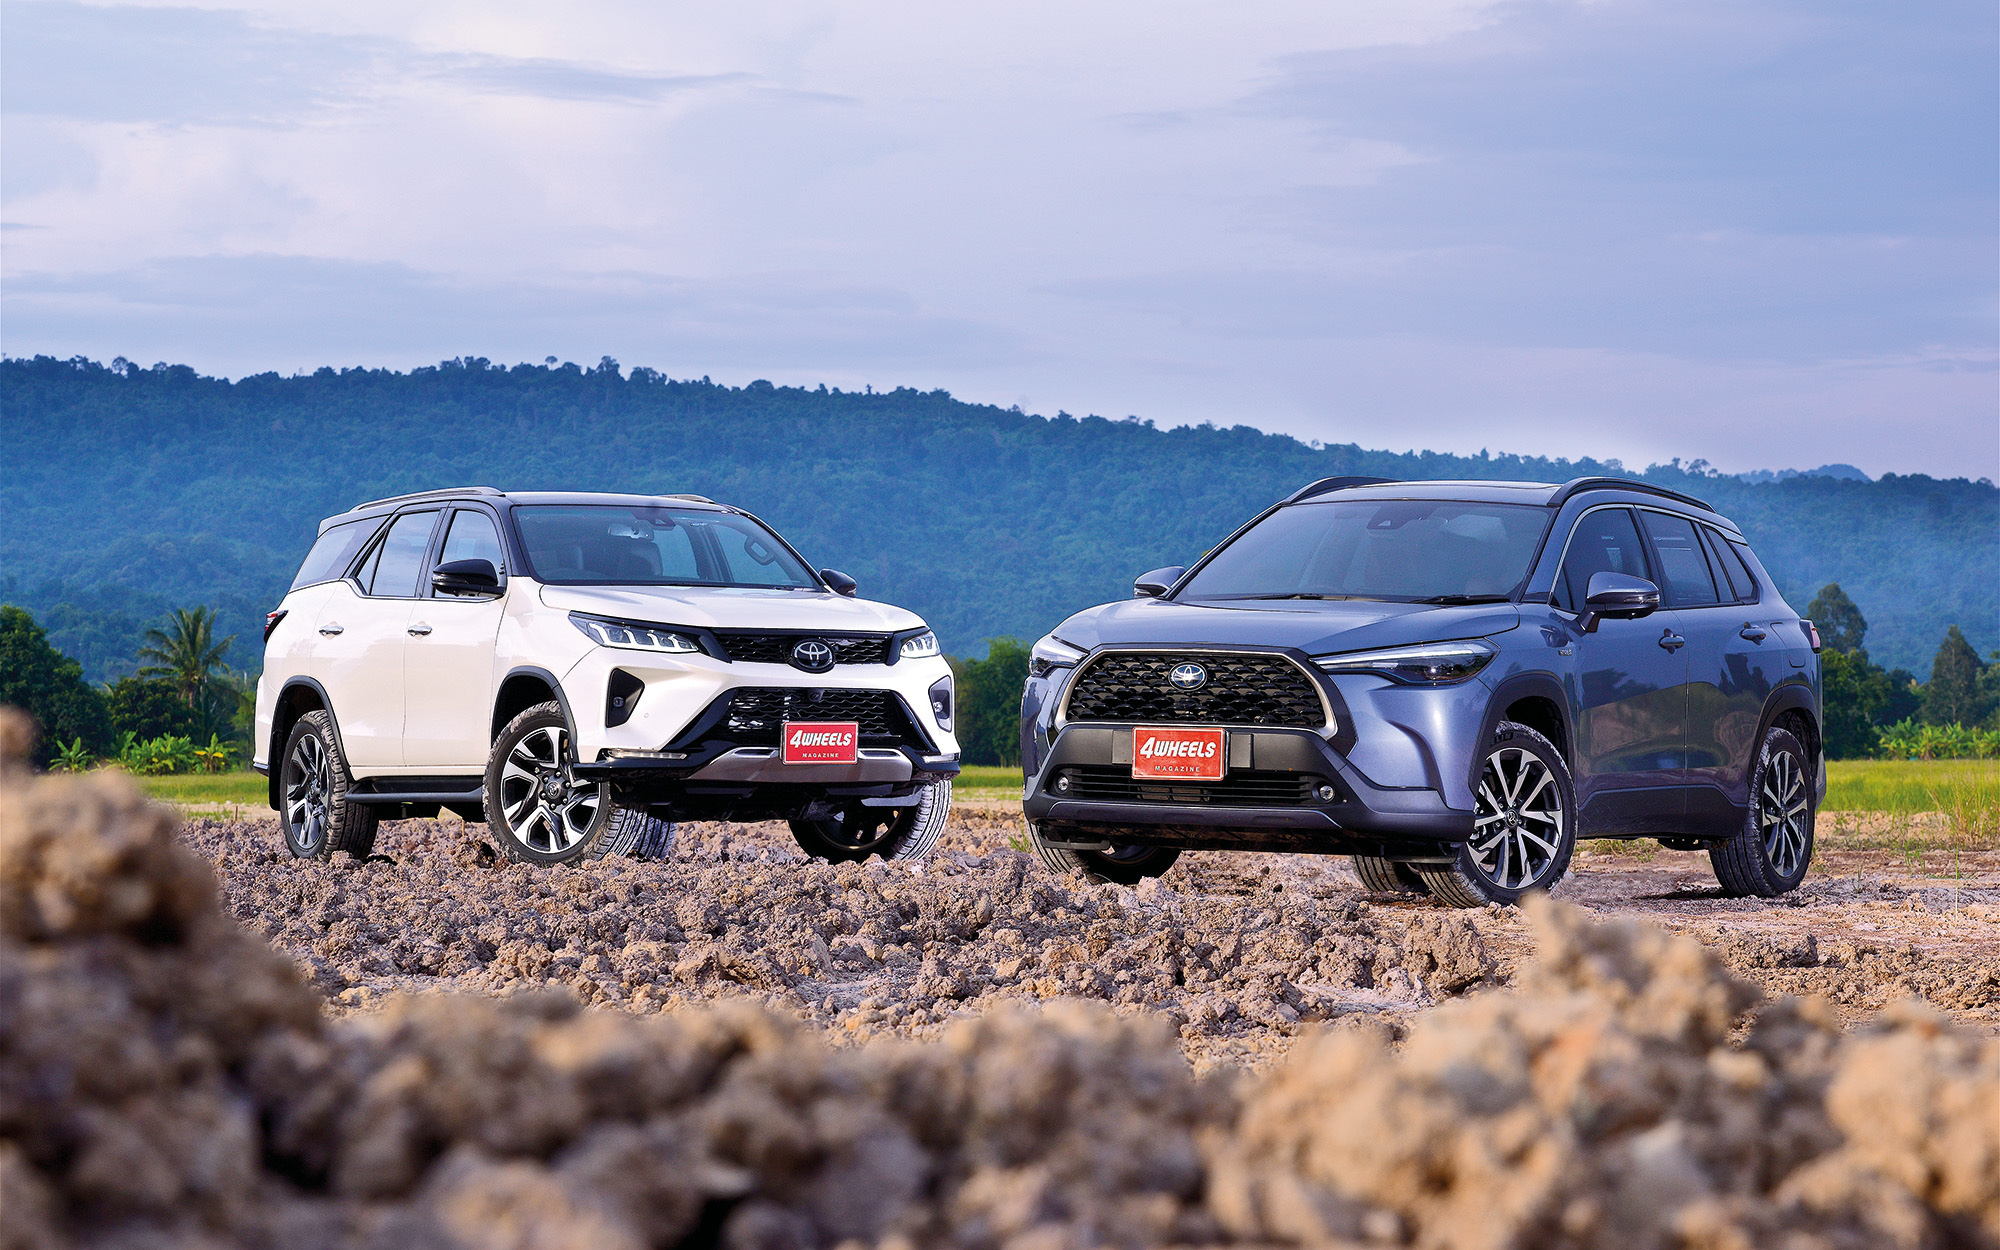 Toyota sắp ra mắt nhiều xe mới: Fortuner thế hệ mới, ‘Corolla Cross’ 7 chỗ và SUV cỡ nhỏ giá mềm